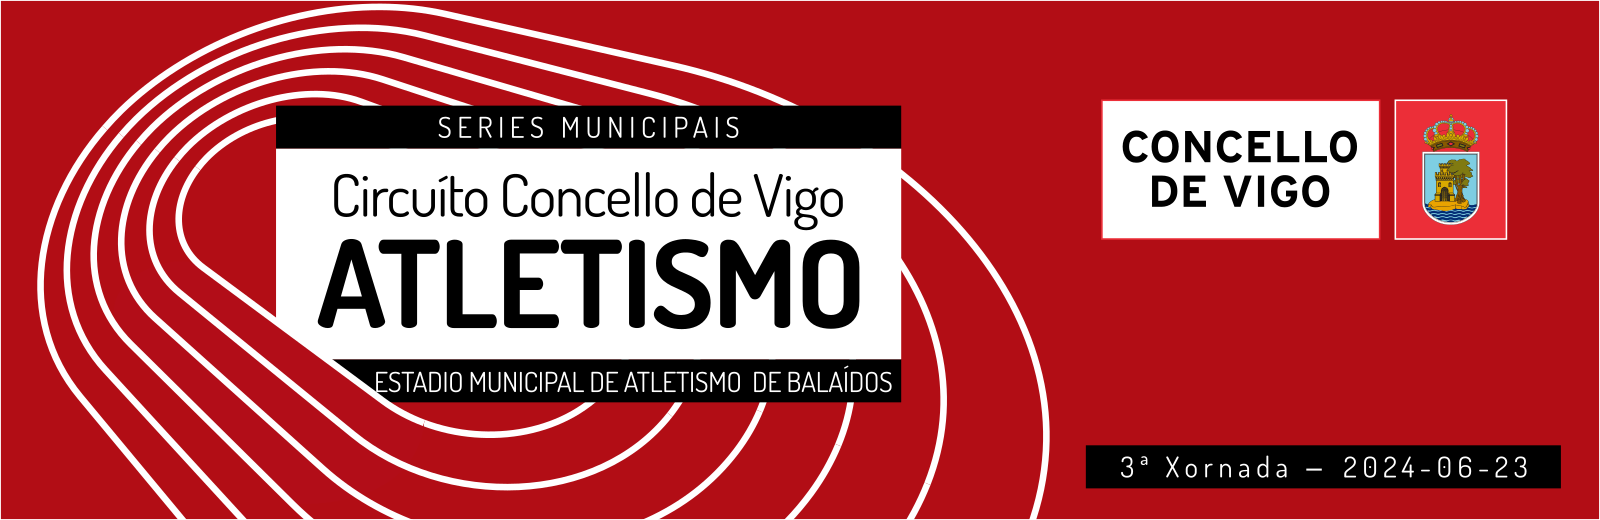  Serie Municipal Concello de Vigo de Atletismo en Pista - Xornada 3.  Estadio Municipal de Atletismo de Balaídos, 23 xuño 2024